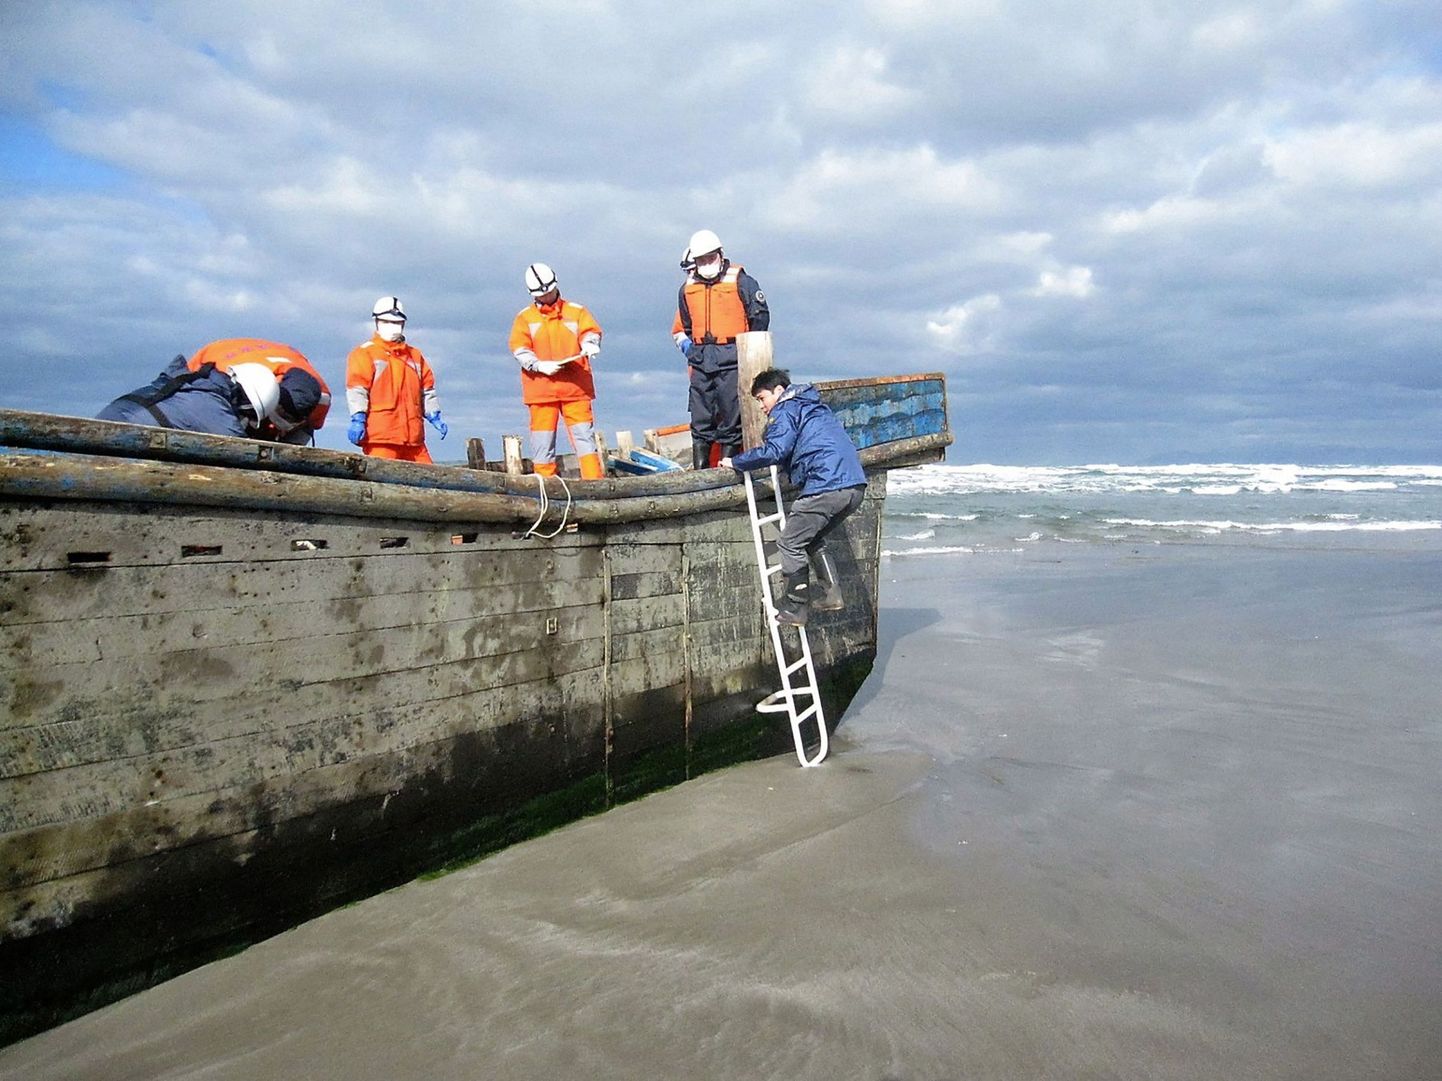 Деревянную лодку с останками восьми человек прибило к берегу в Японии, в районе города Ога префектуры Акита.